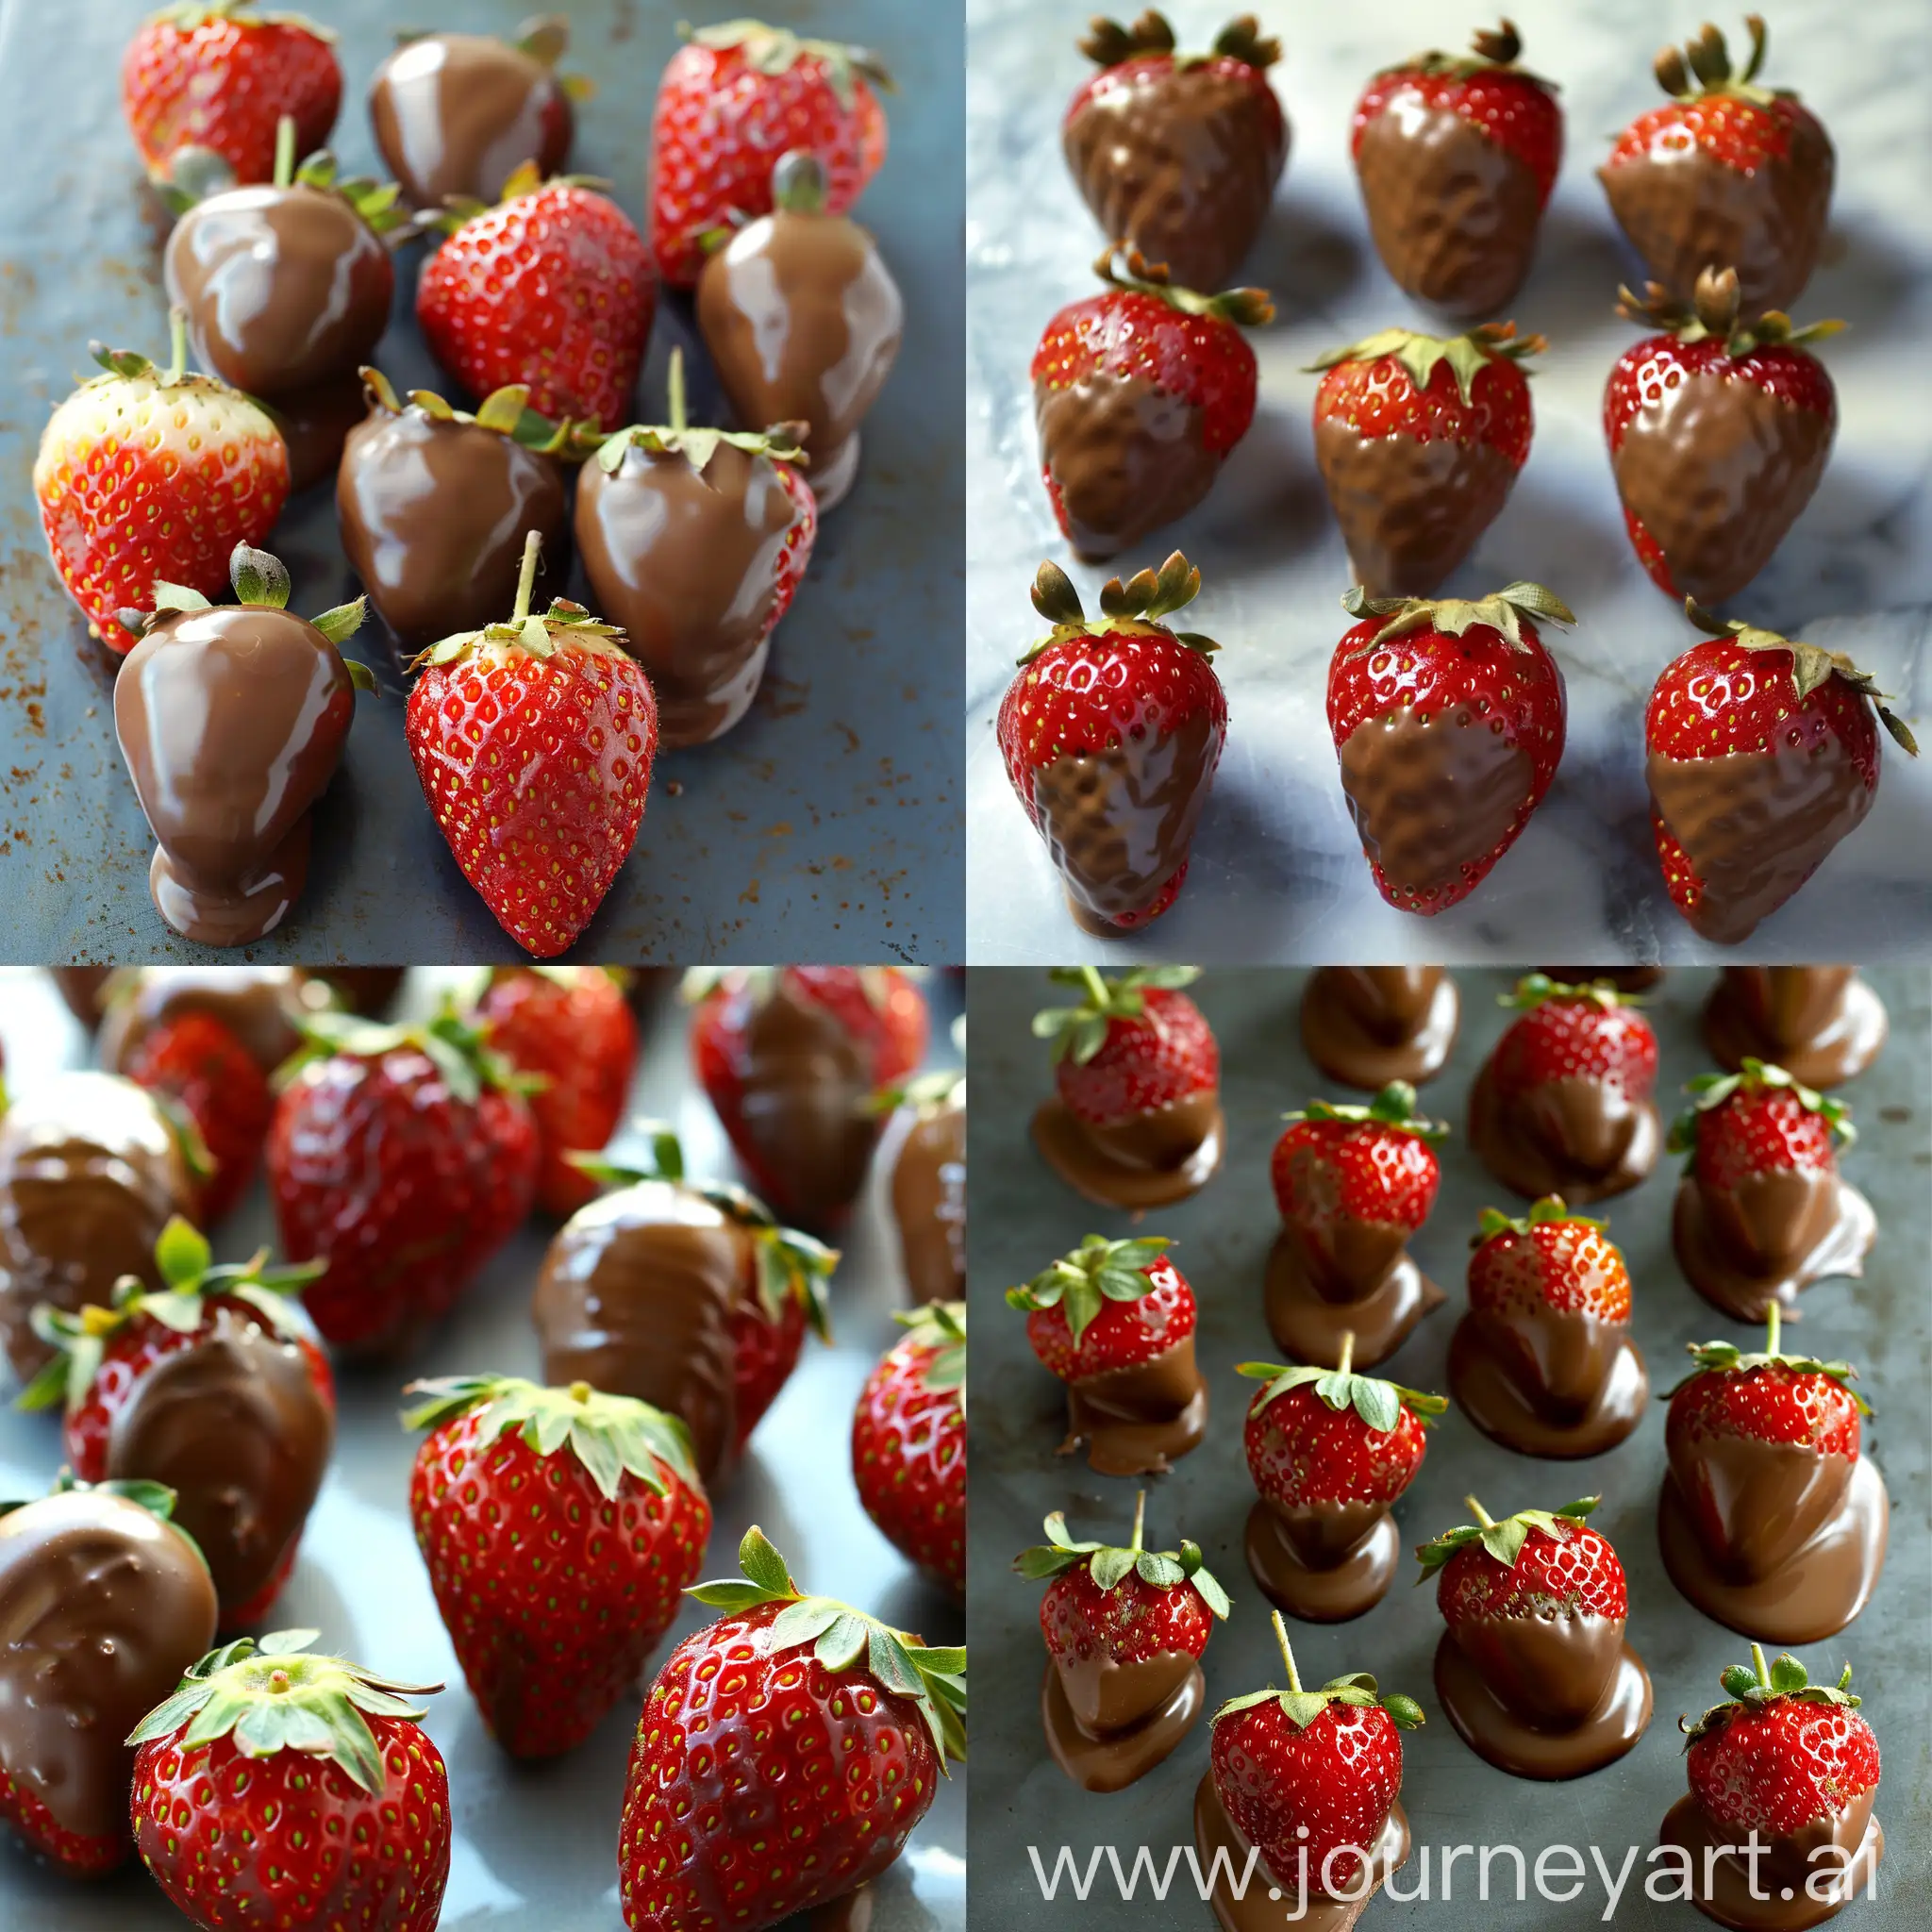 Chocolate-Dipped Strawberries: Fresh, juicy strawberries dipped in rich, melted chocolate. You can use dark, milk, or white chocolate.